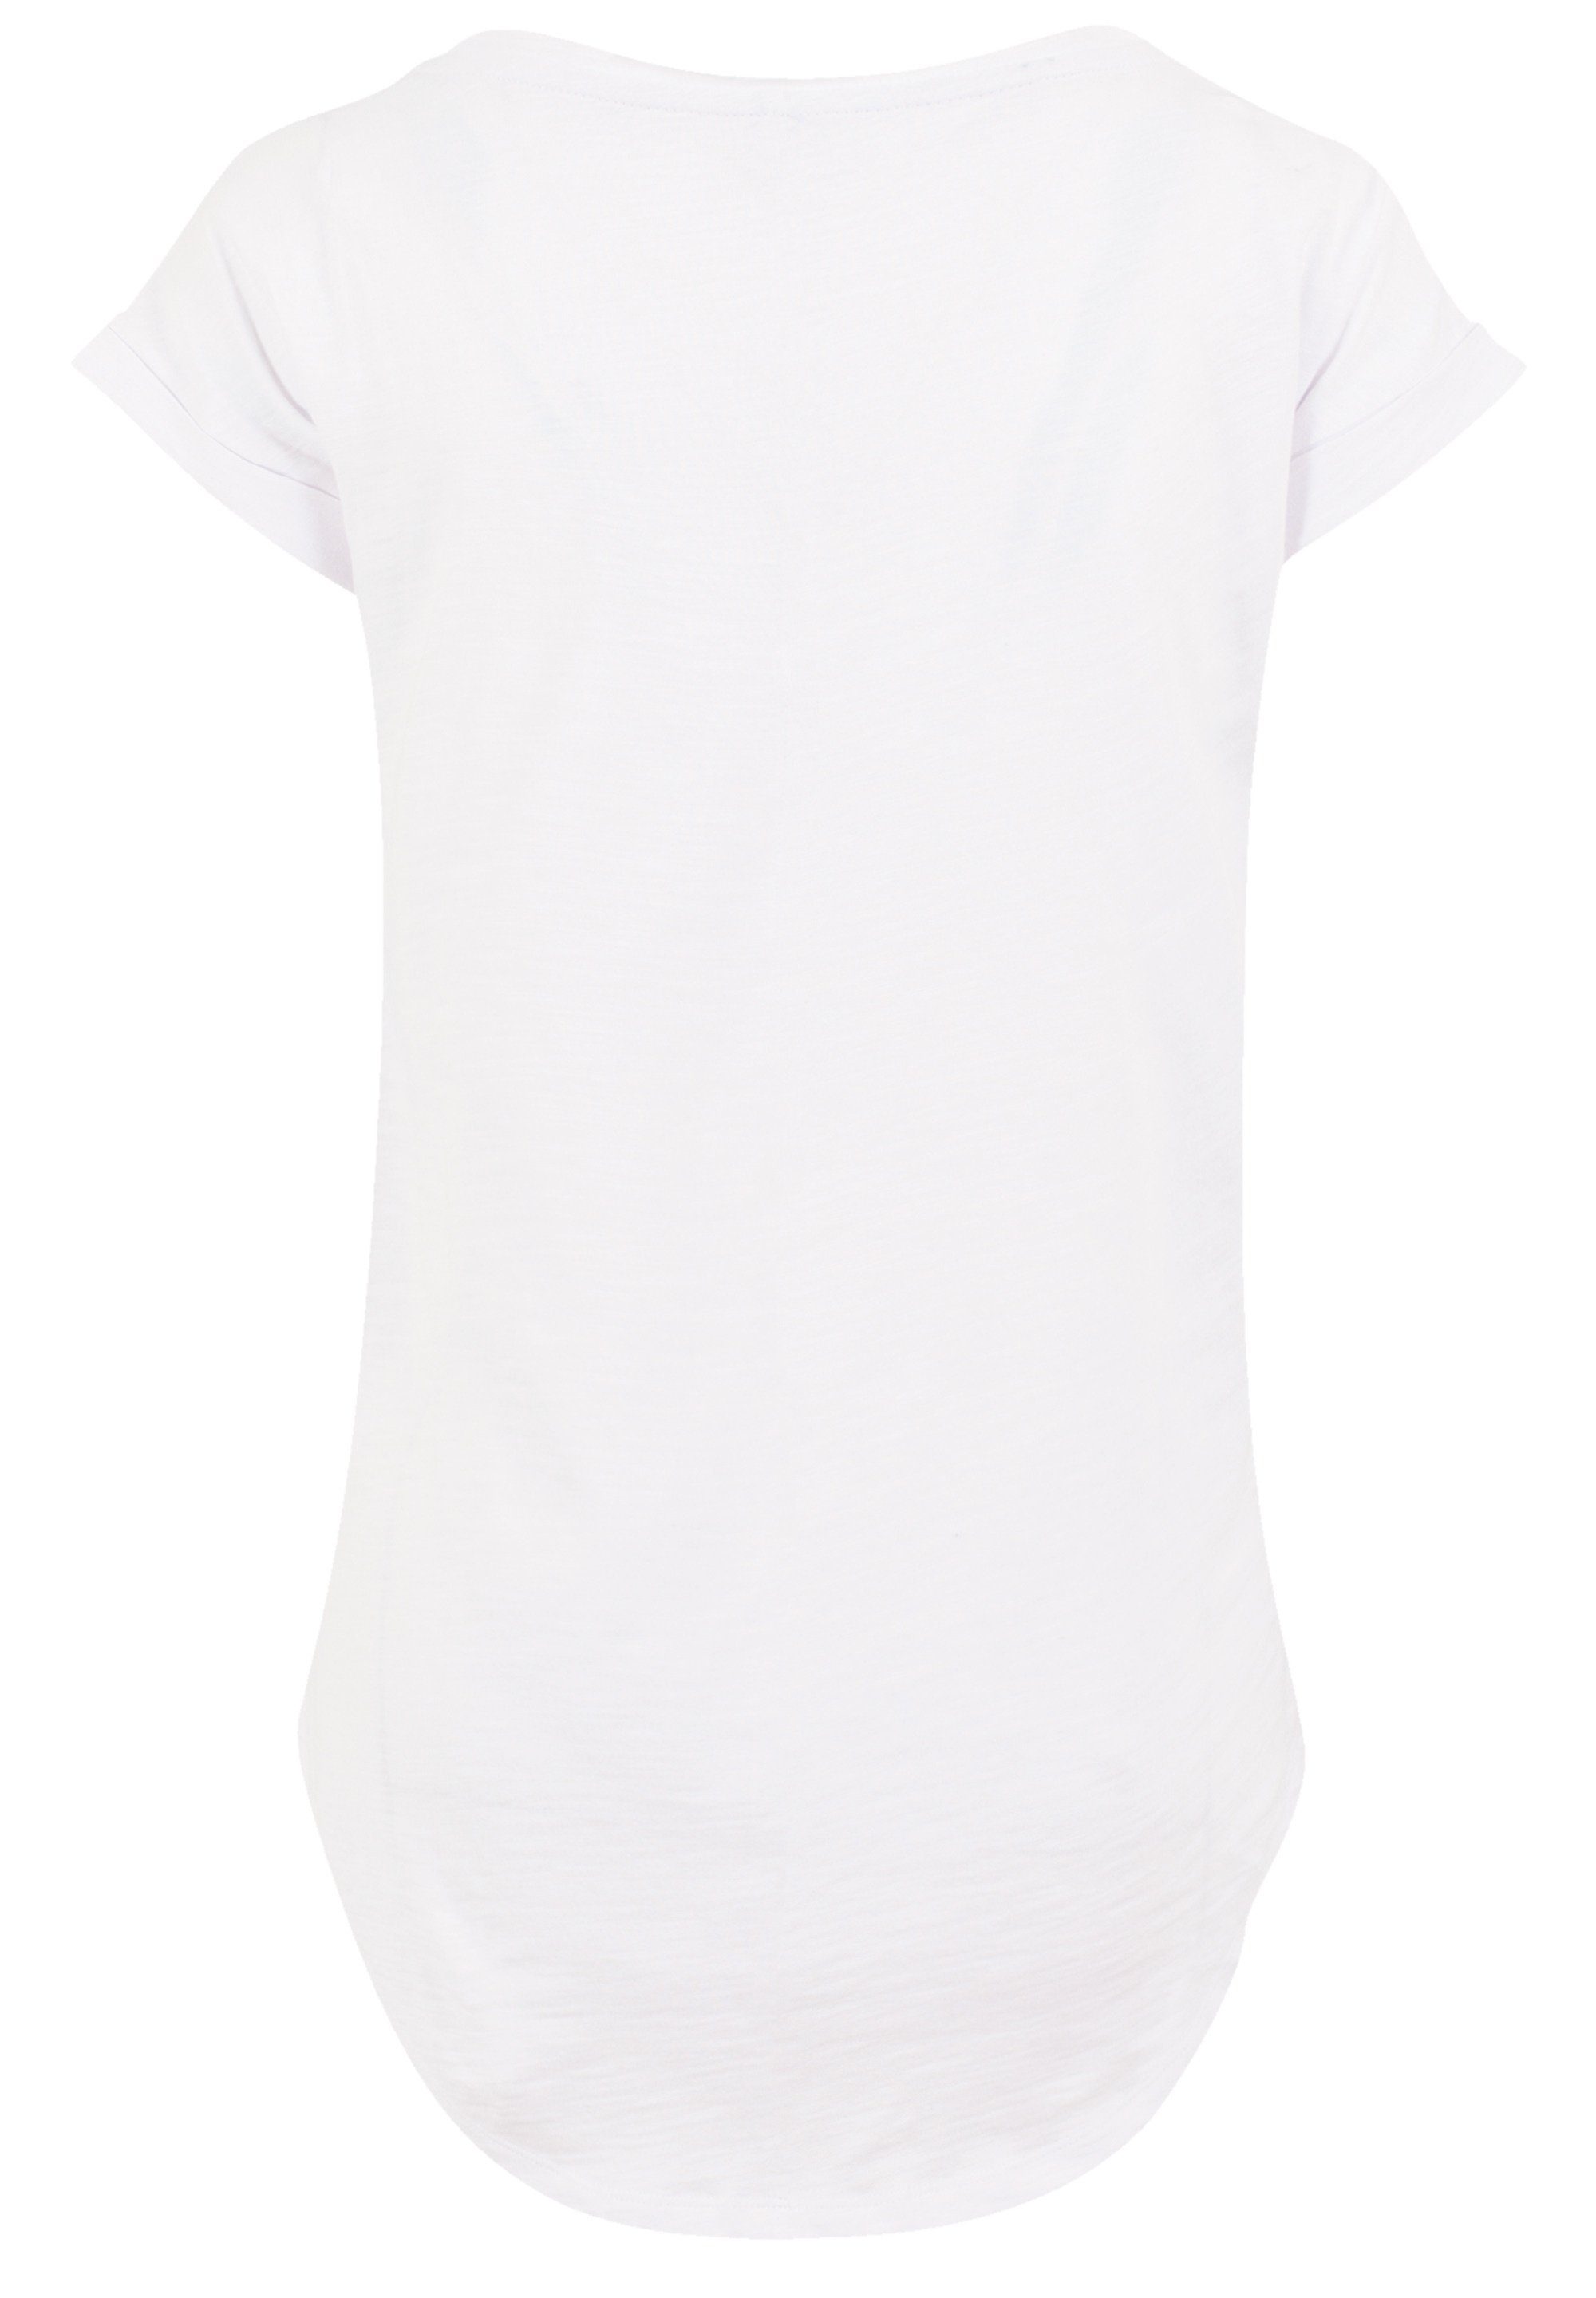 F4NT4STIC T-Shirt Disney Peter Pan Damen extra 1967 lang T-Shirt geschnittenes Qualität, Hinten Premium